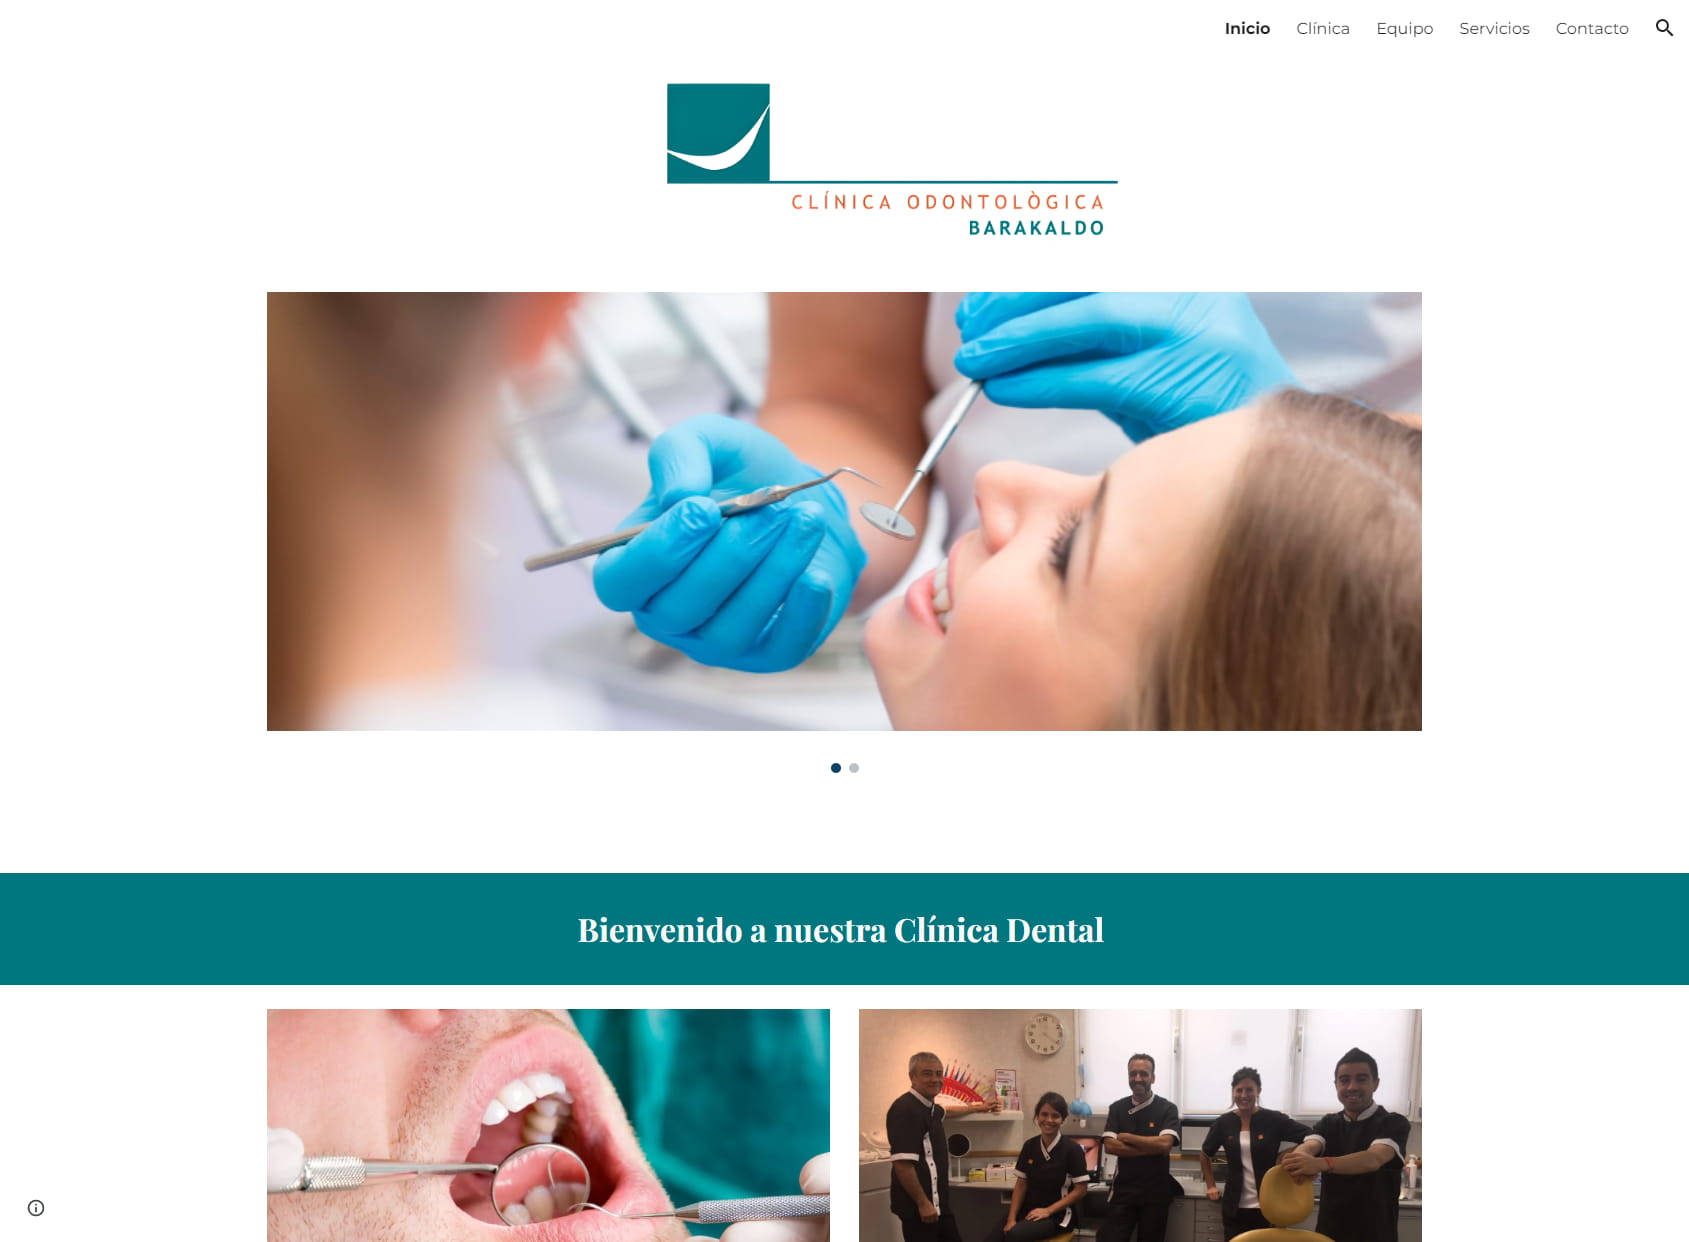 Clinica Odontologica Barakaldo